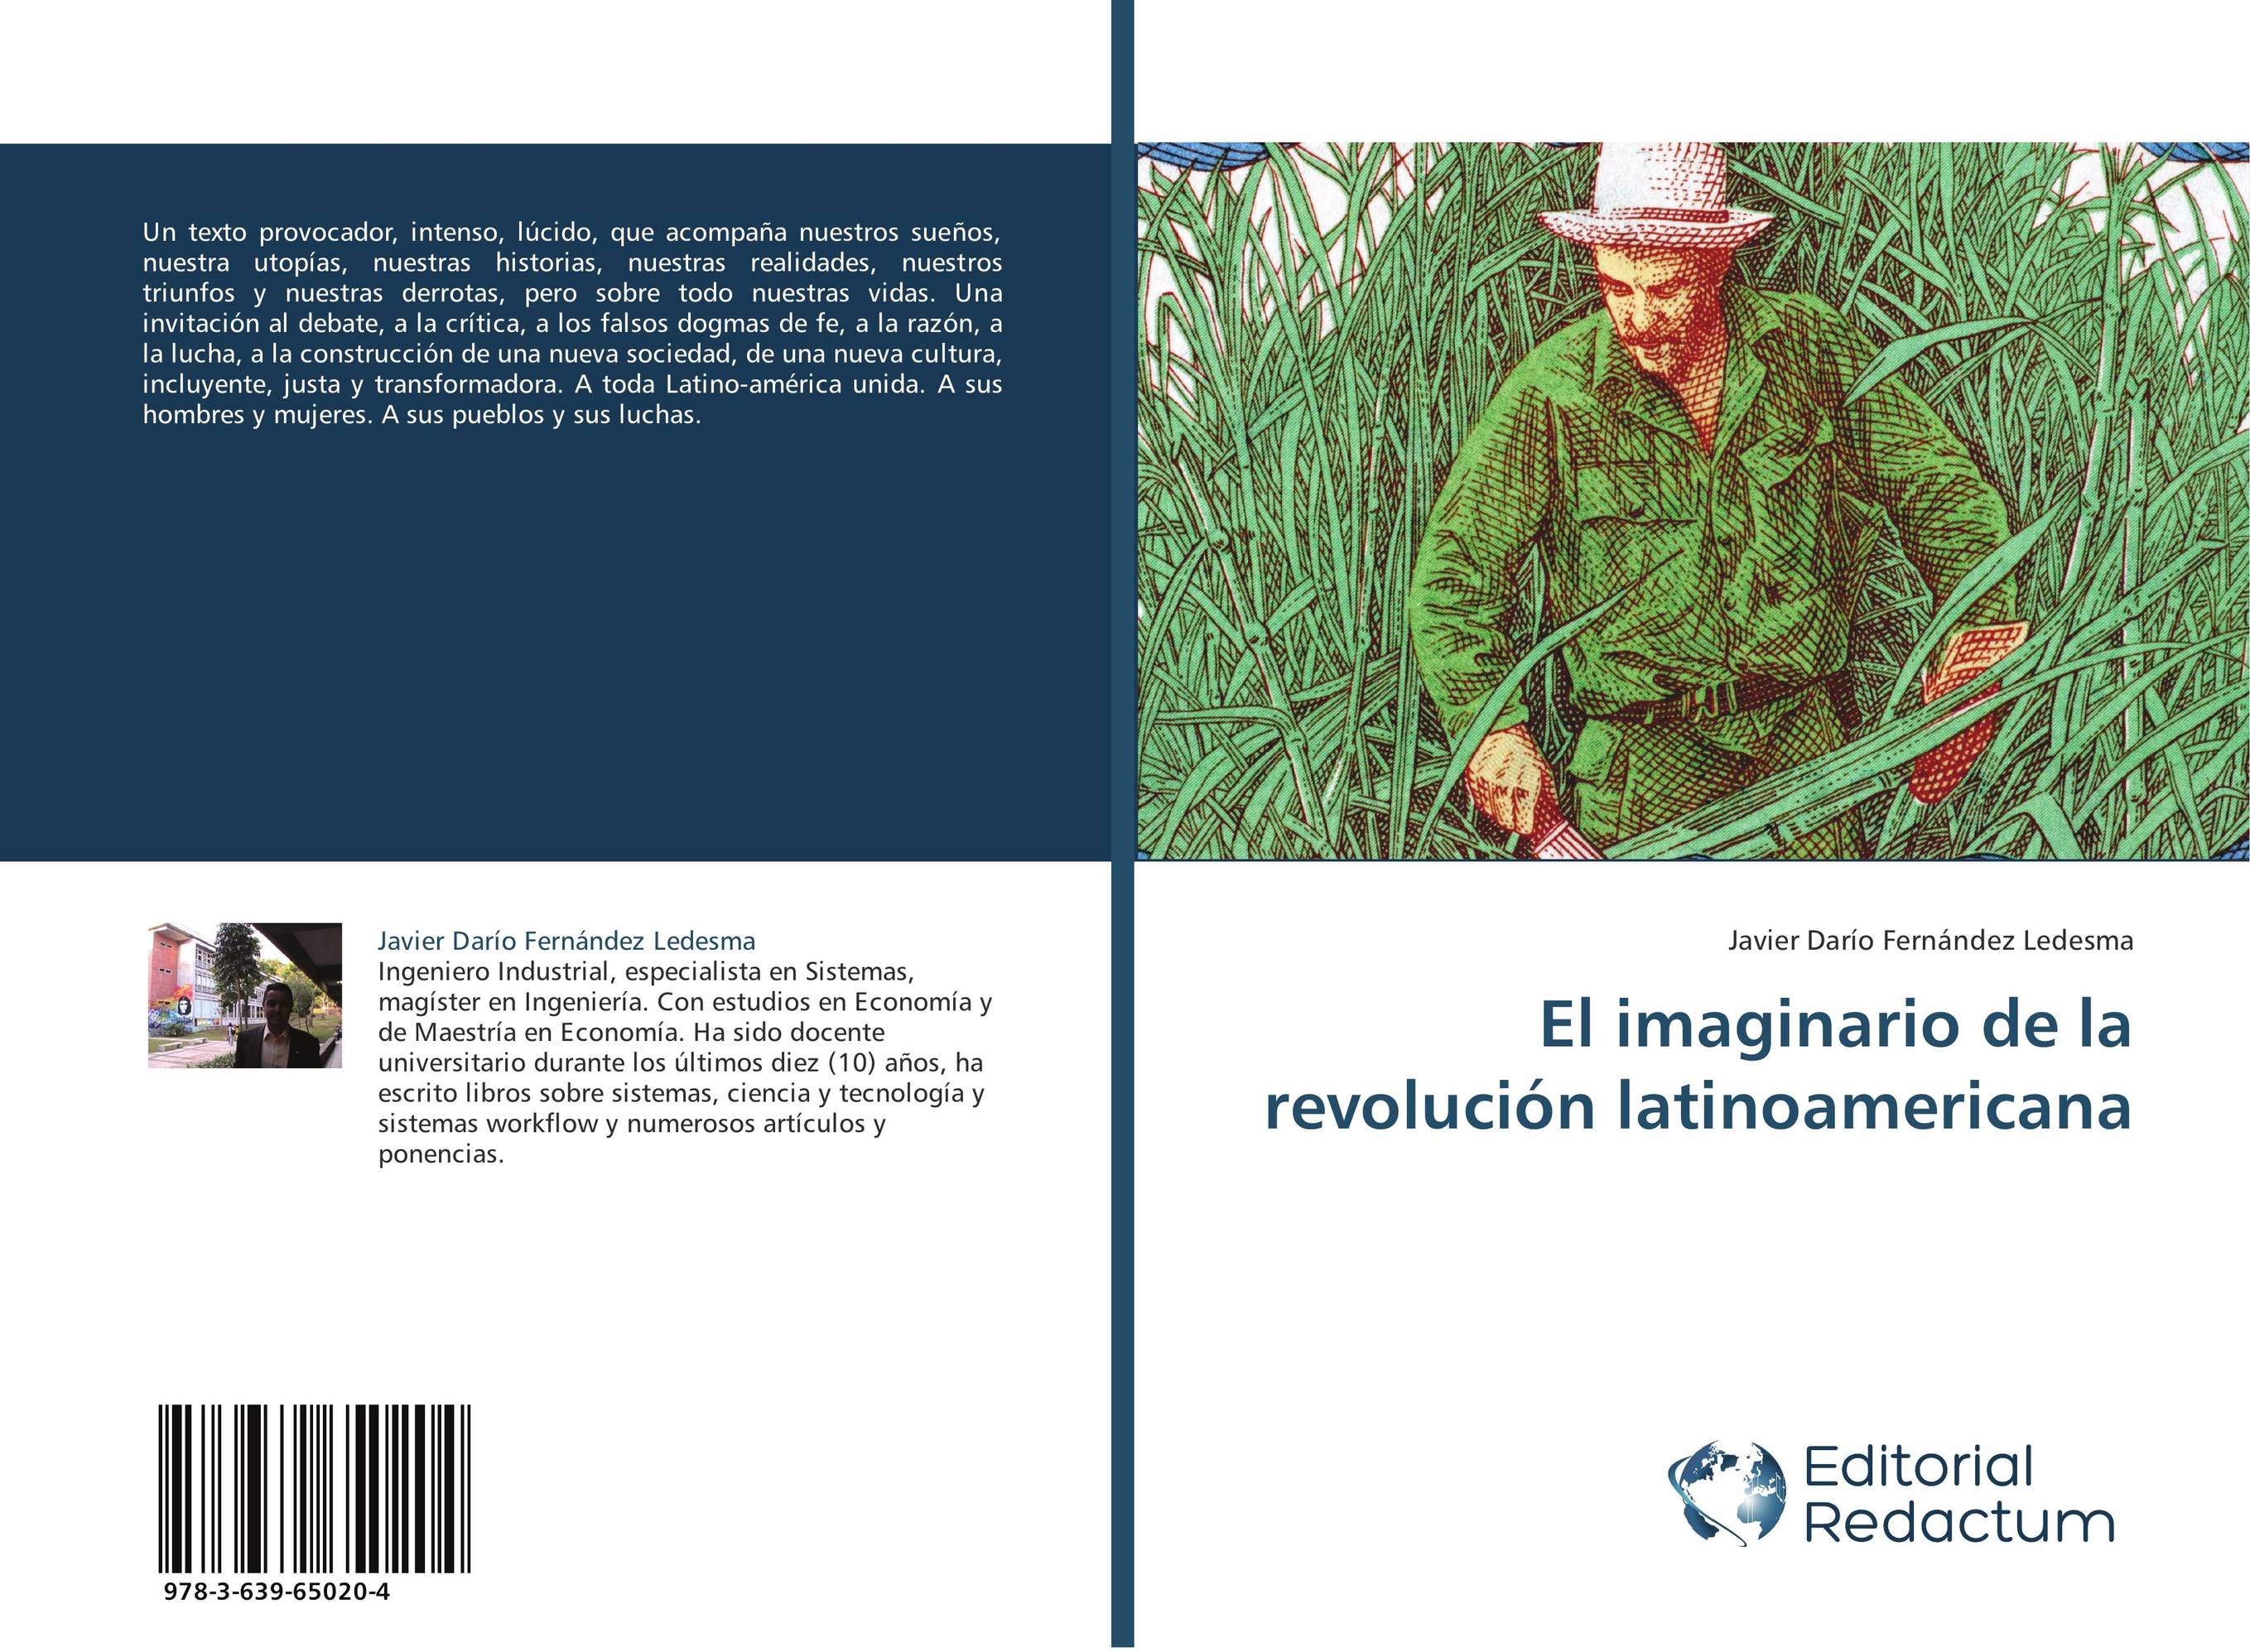 El imaginario de la revolución latinoamericana